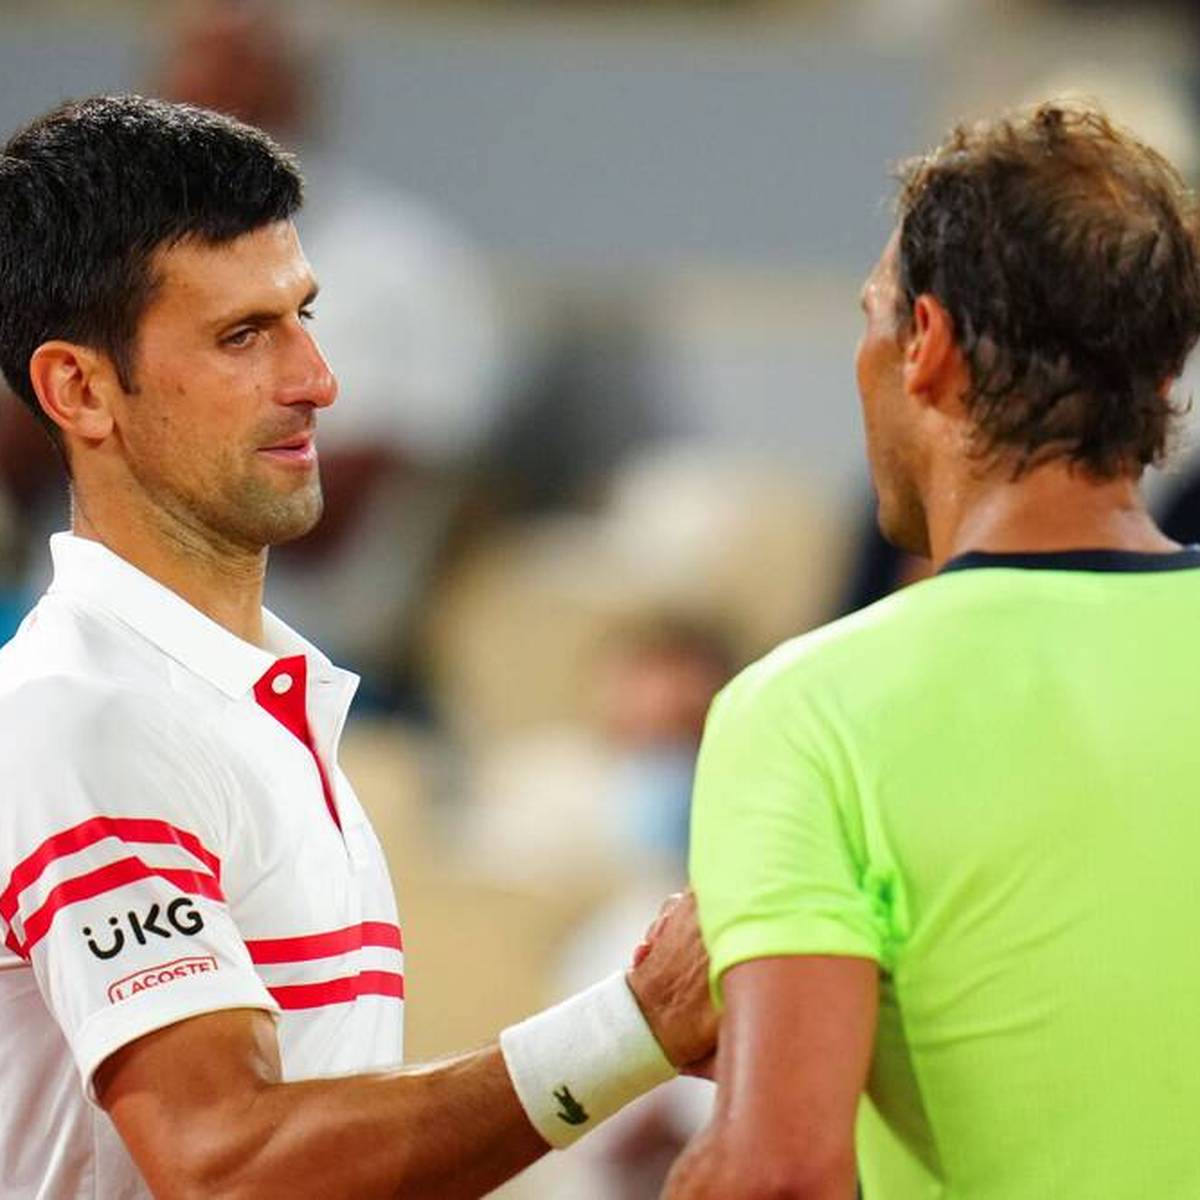 French Open, Paris Djokovic - Nadal, Zverev - Alcaraz